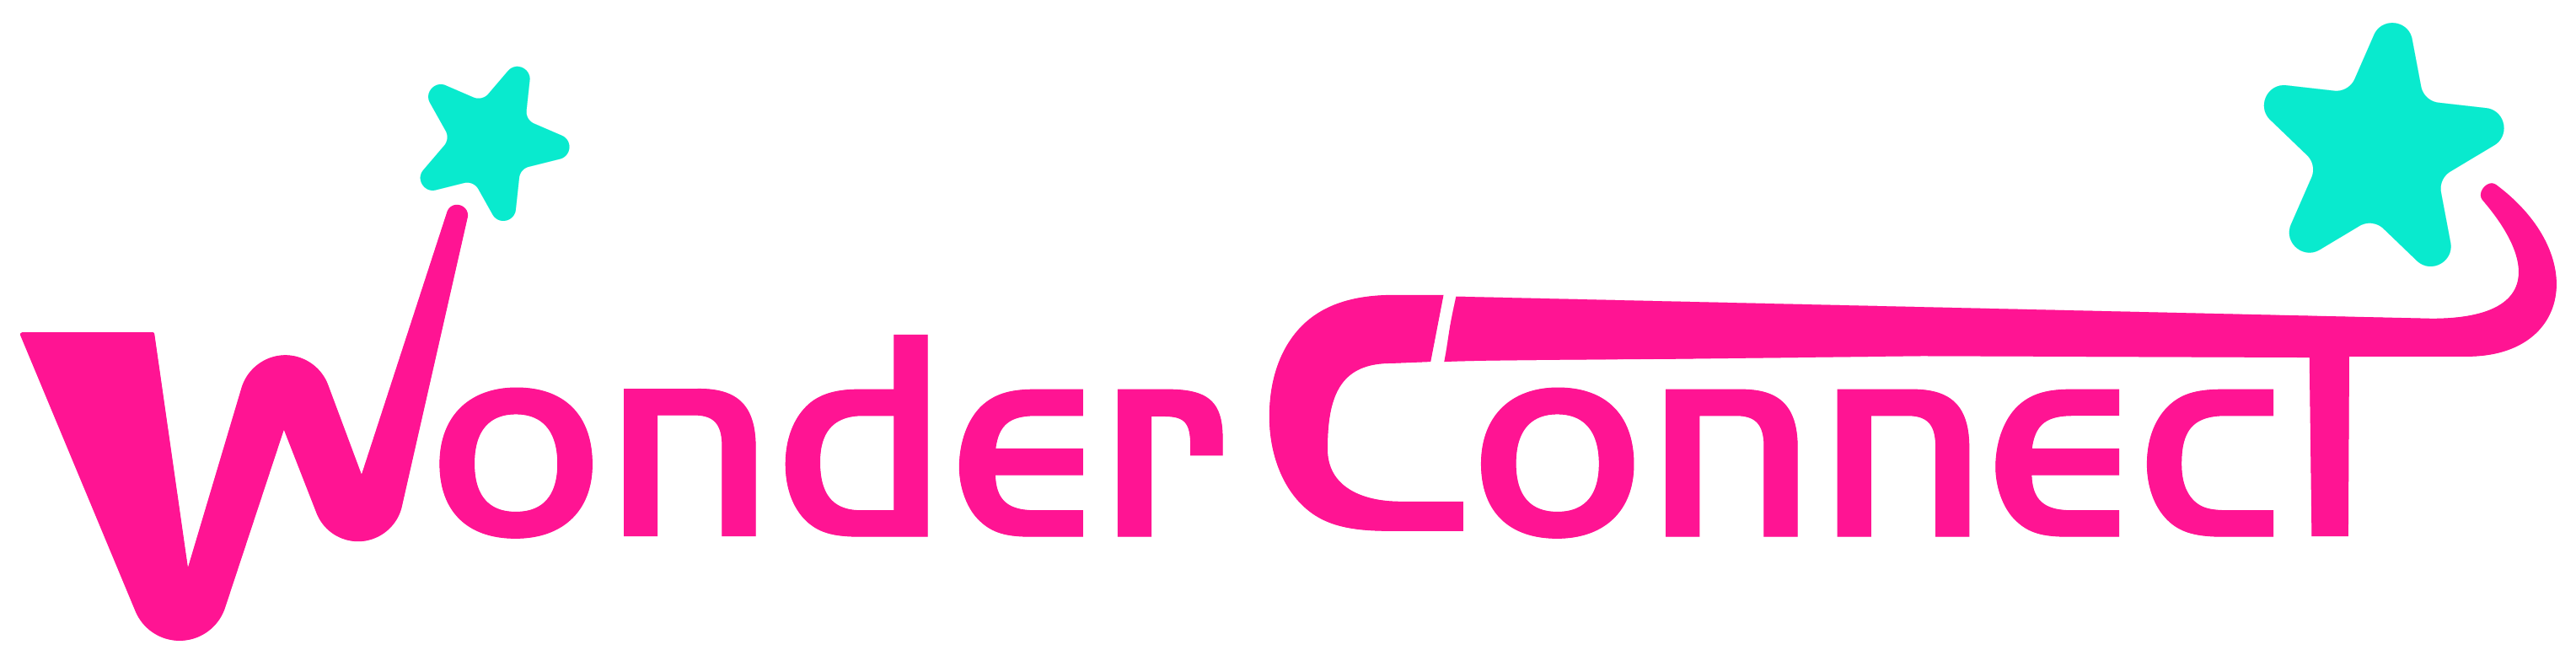 Wonder Connect